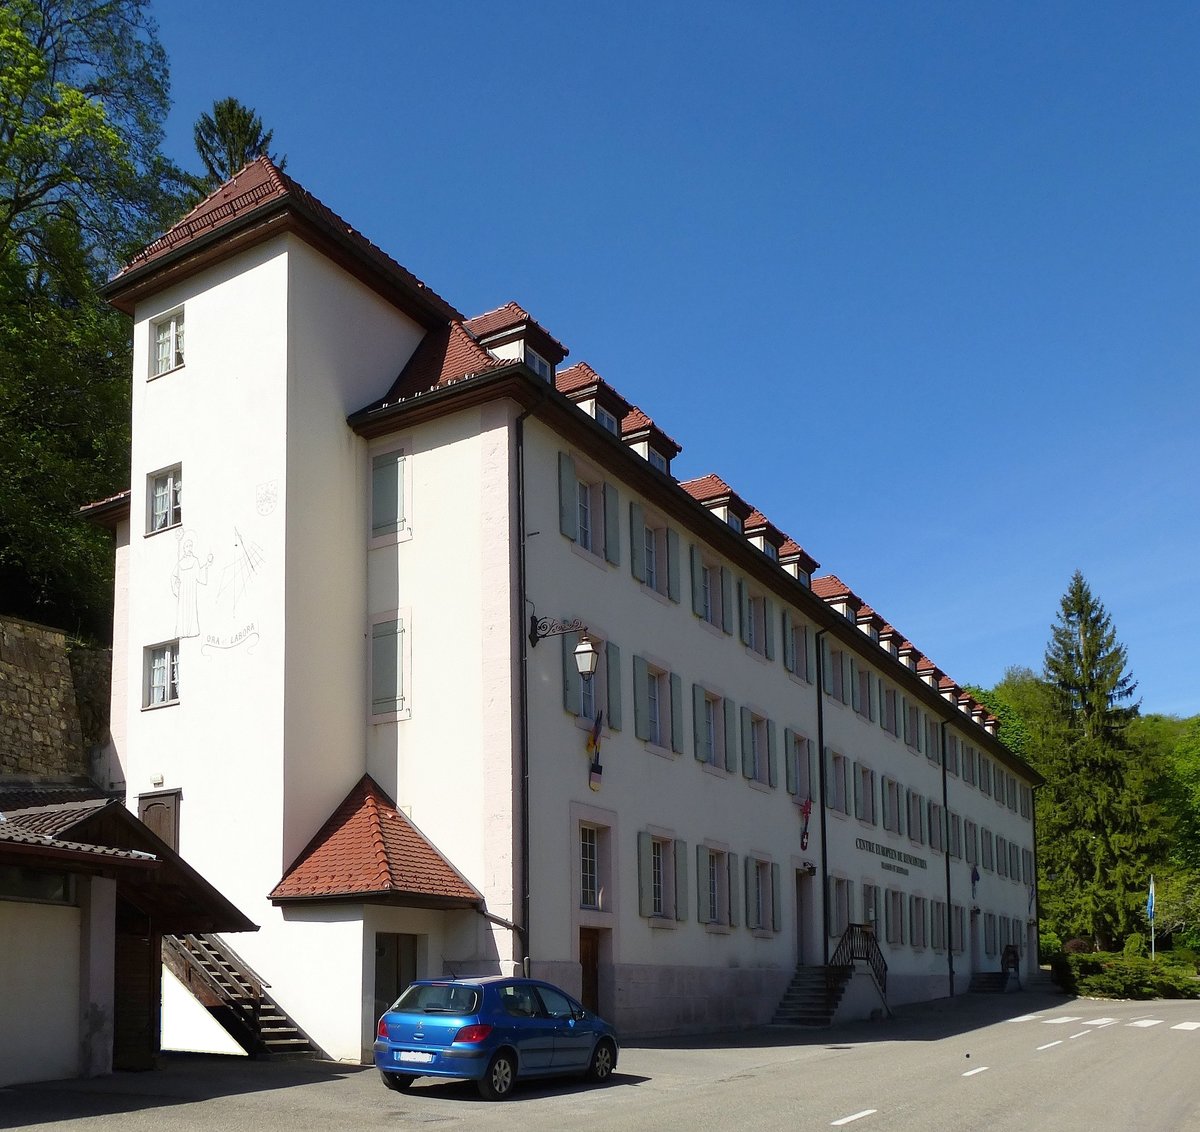 Lucelle, das erhaltene Klostergebäude der ehemaligen Zisterzienserabtei Lützel, begerbergt seit 1961 das Familienheim und Feriencentrum  CERL   Mai 2017